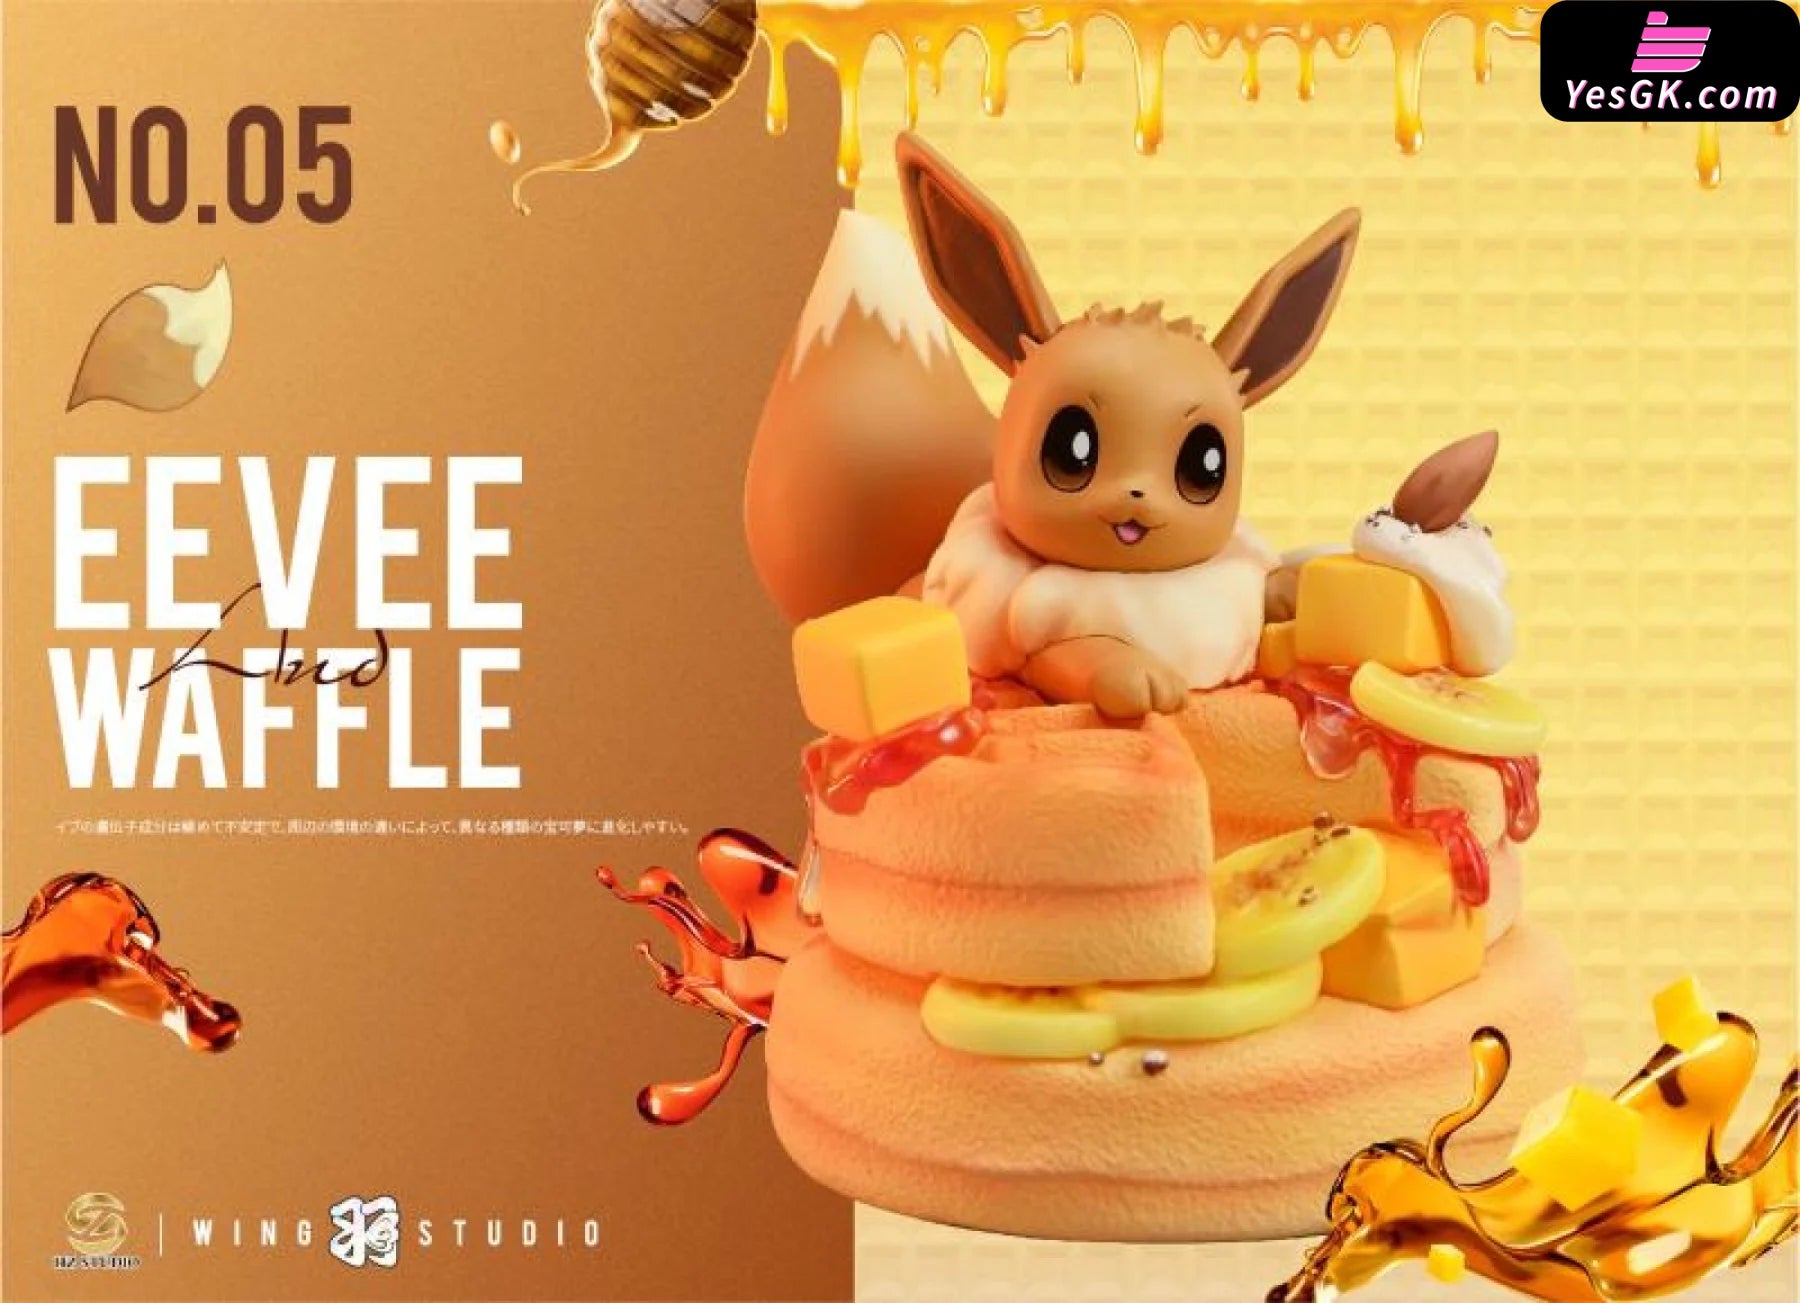 Pokémon Desserts Series Waffle Eevee Resin Statue - Hz Studio [In Stock]